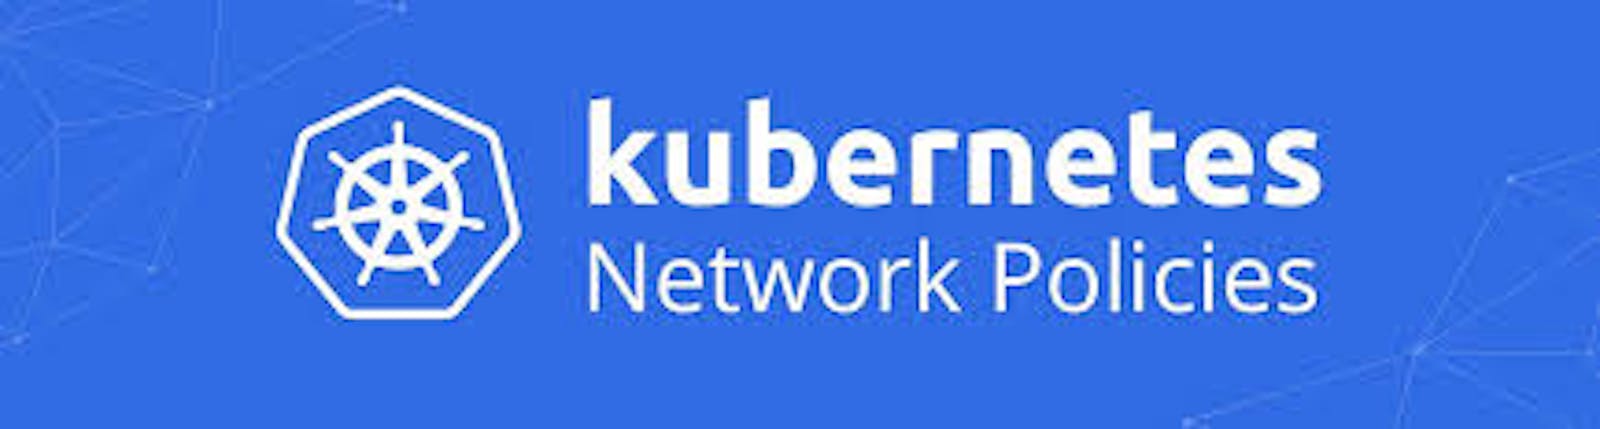 Network Policies: Understanding Kubernetes Network Policies